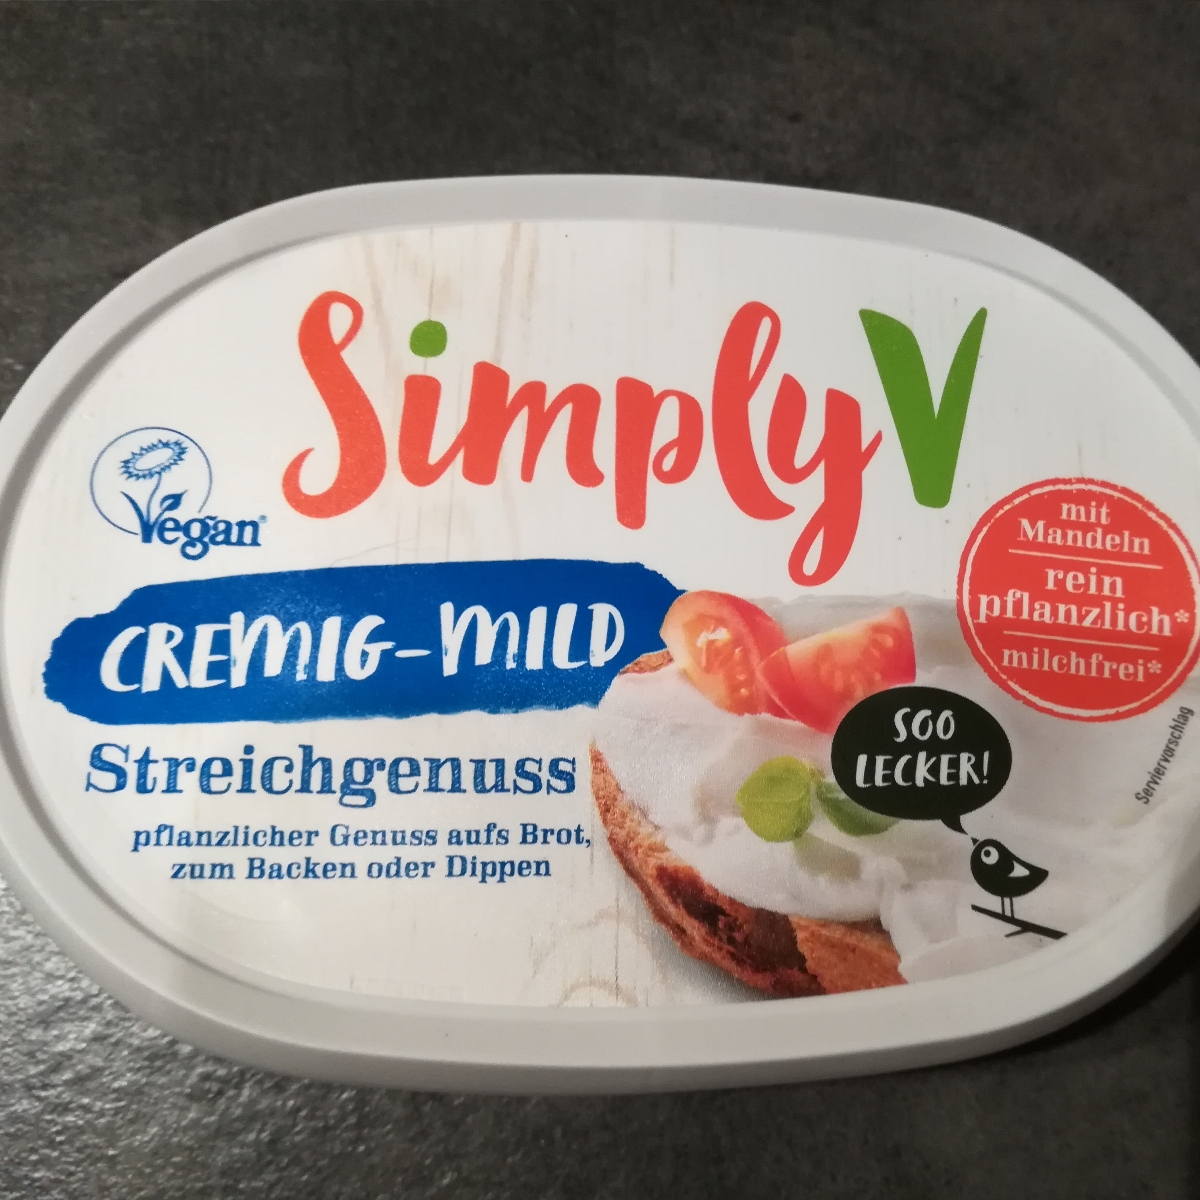 Simply V Streichgenuss Cremig-Mild Reviews